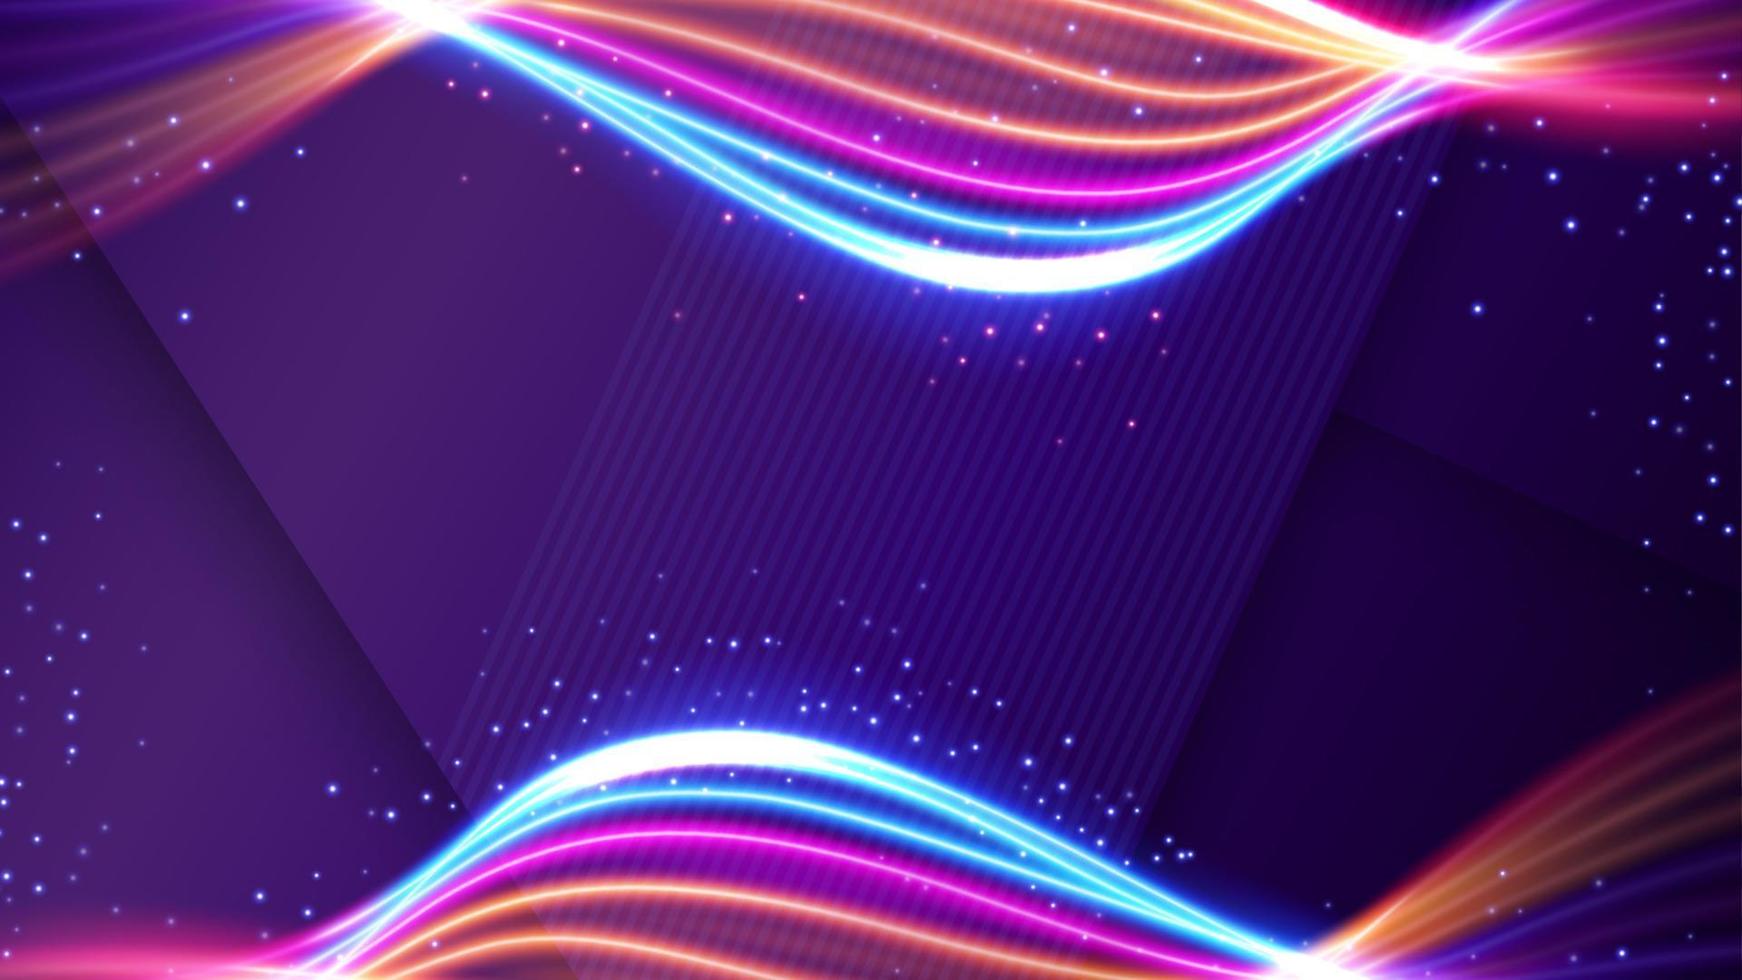 lichtspurhintergrund, elegante violette linienkreuzung. Breitbild-Vektor-Illustration vektor